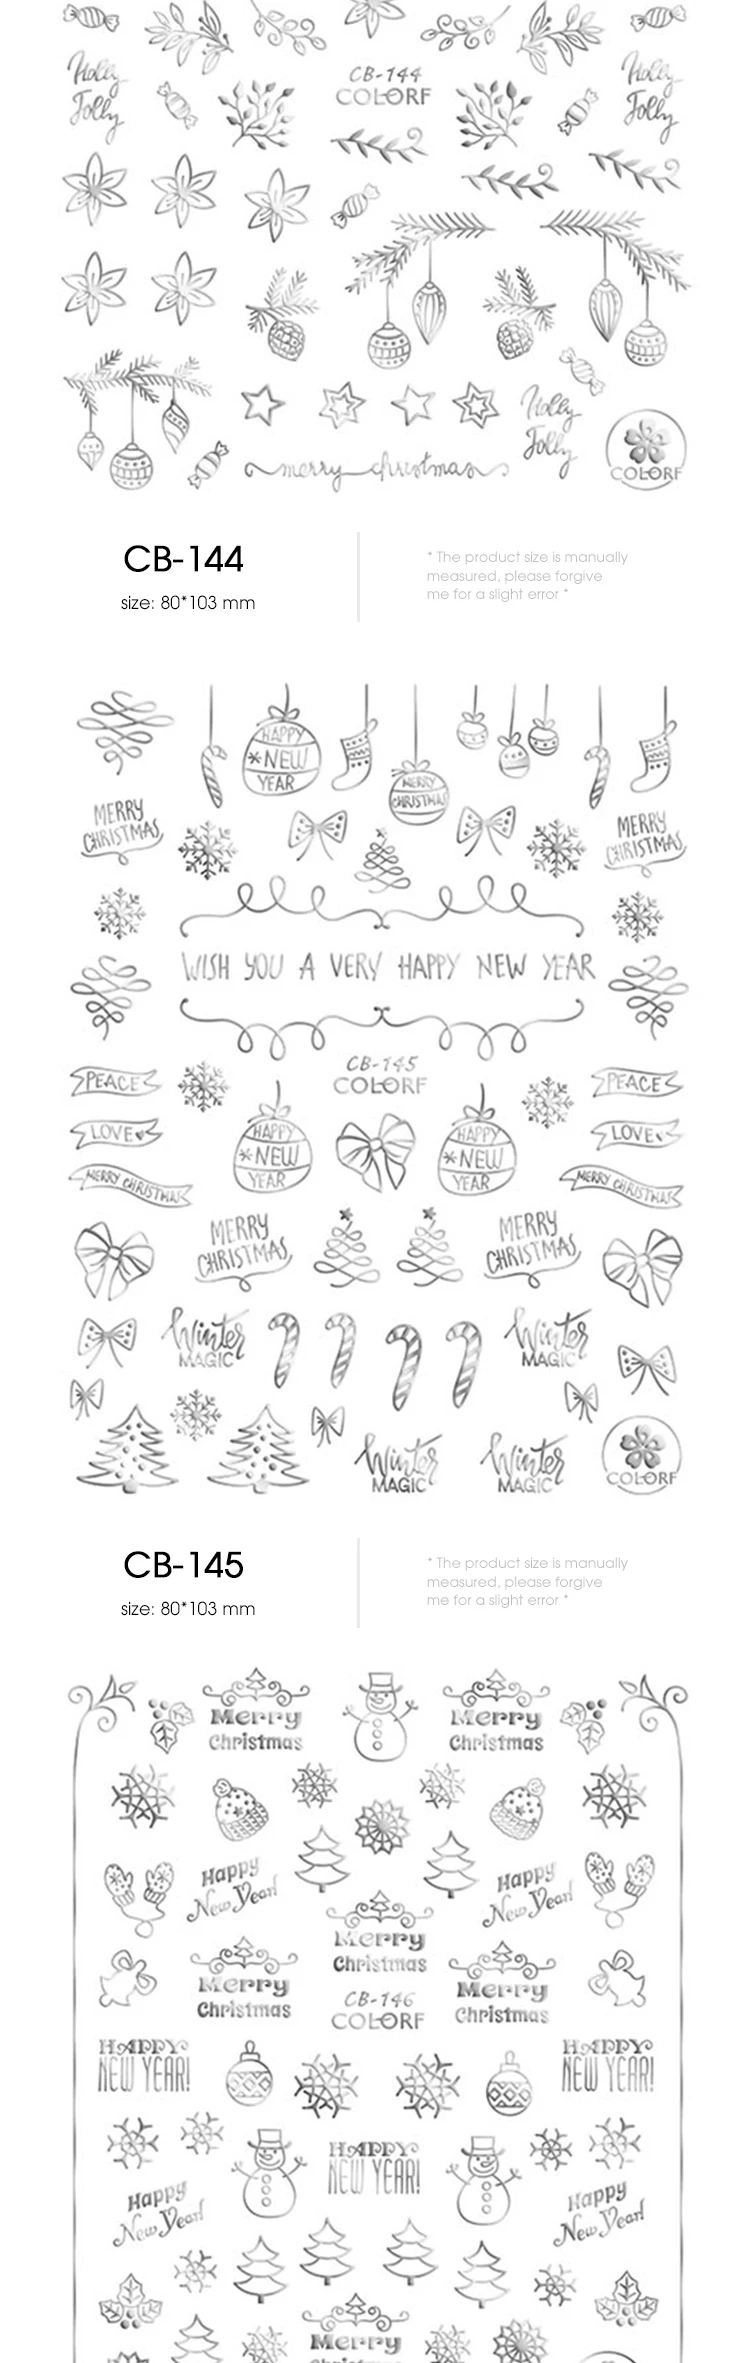 1 шт. наклейки для рождественских ногтей наклейки снежинки конверты рождественские украшения с изображением снеговика для зимних ногтей маникюрные инструменты